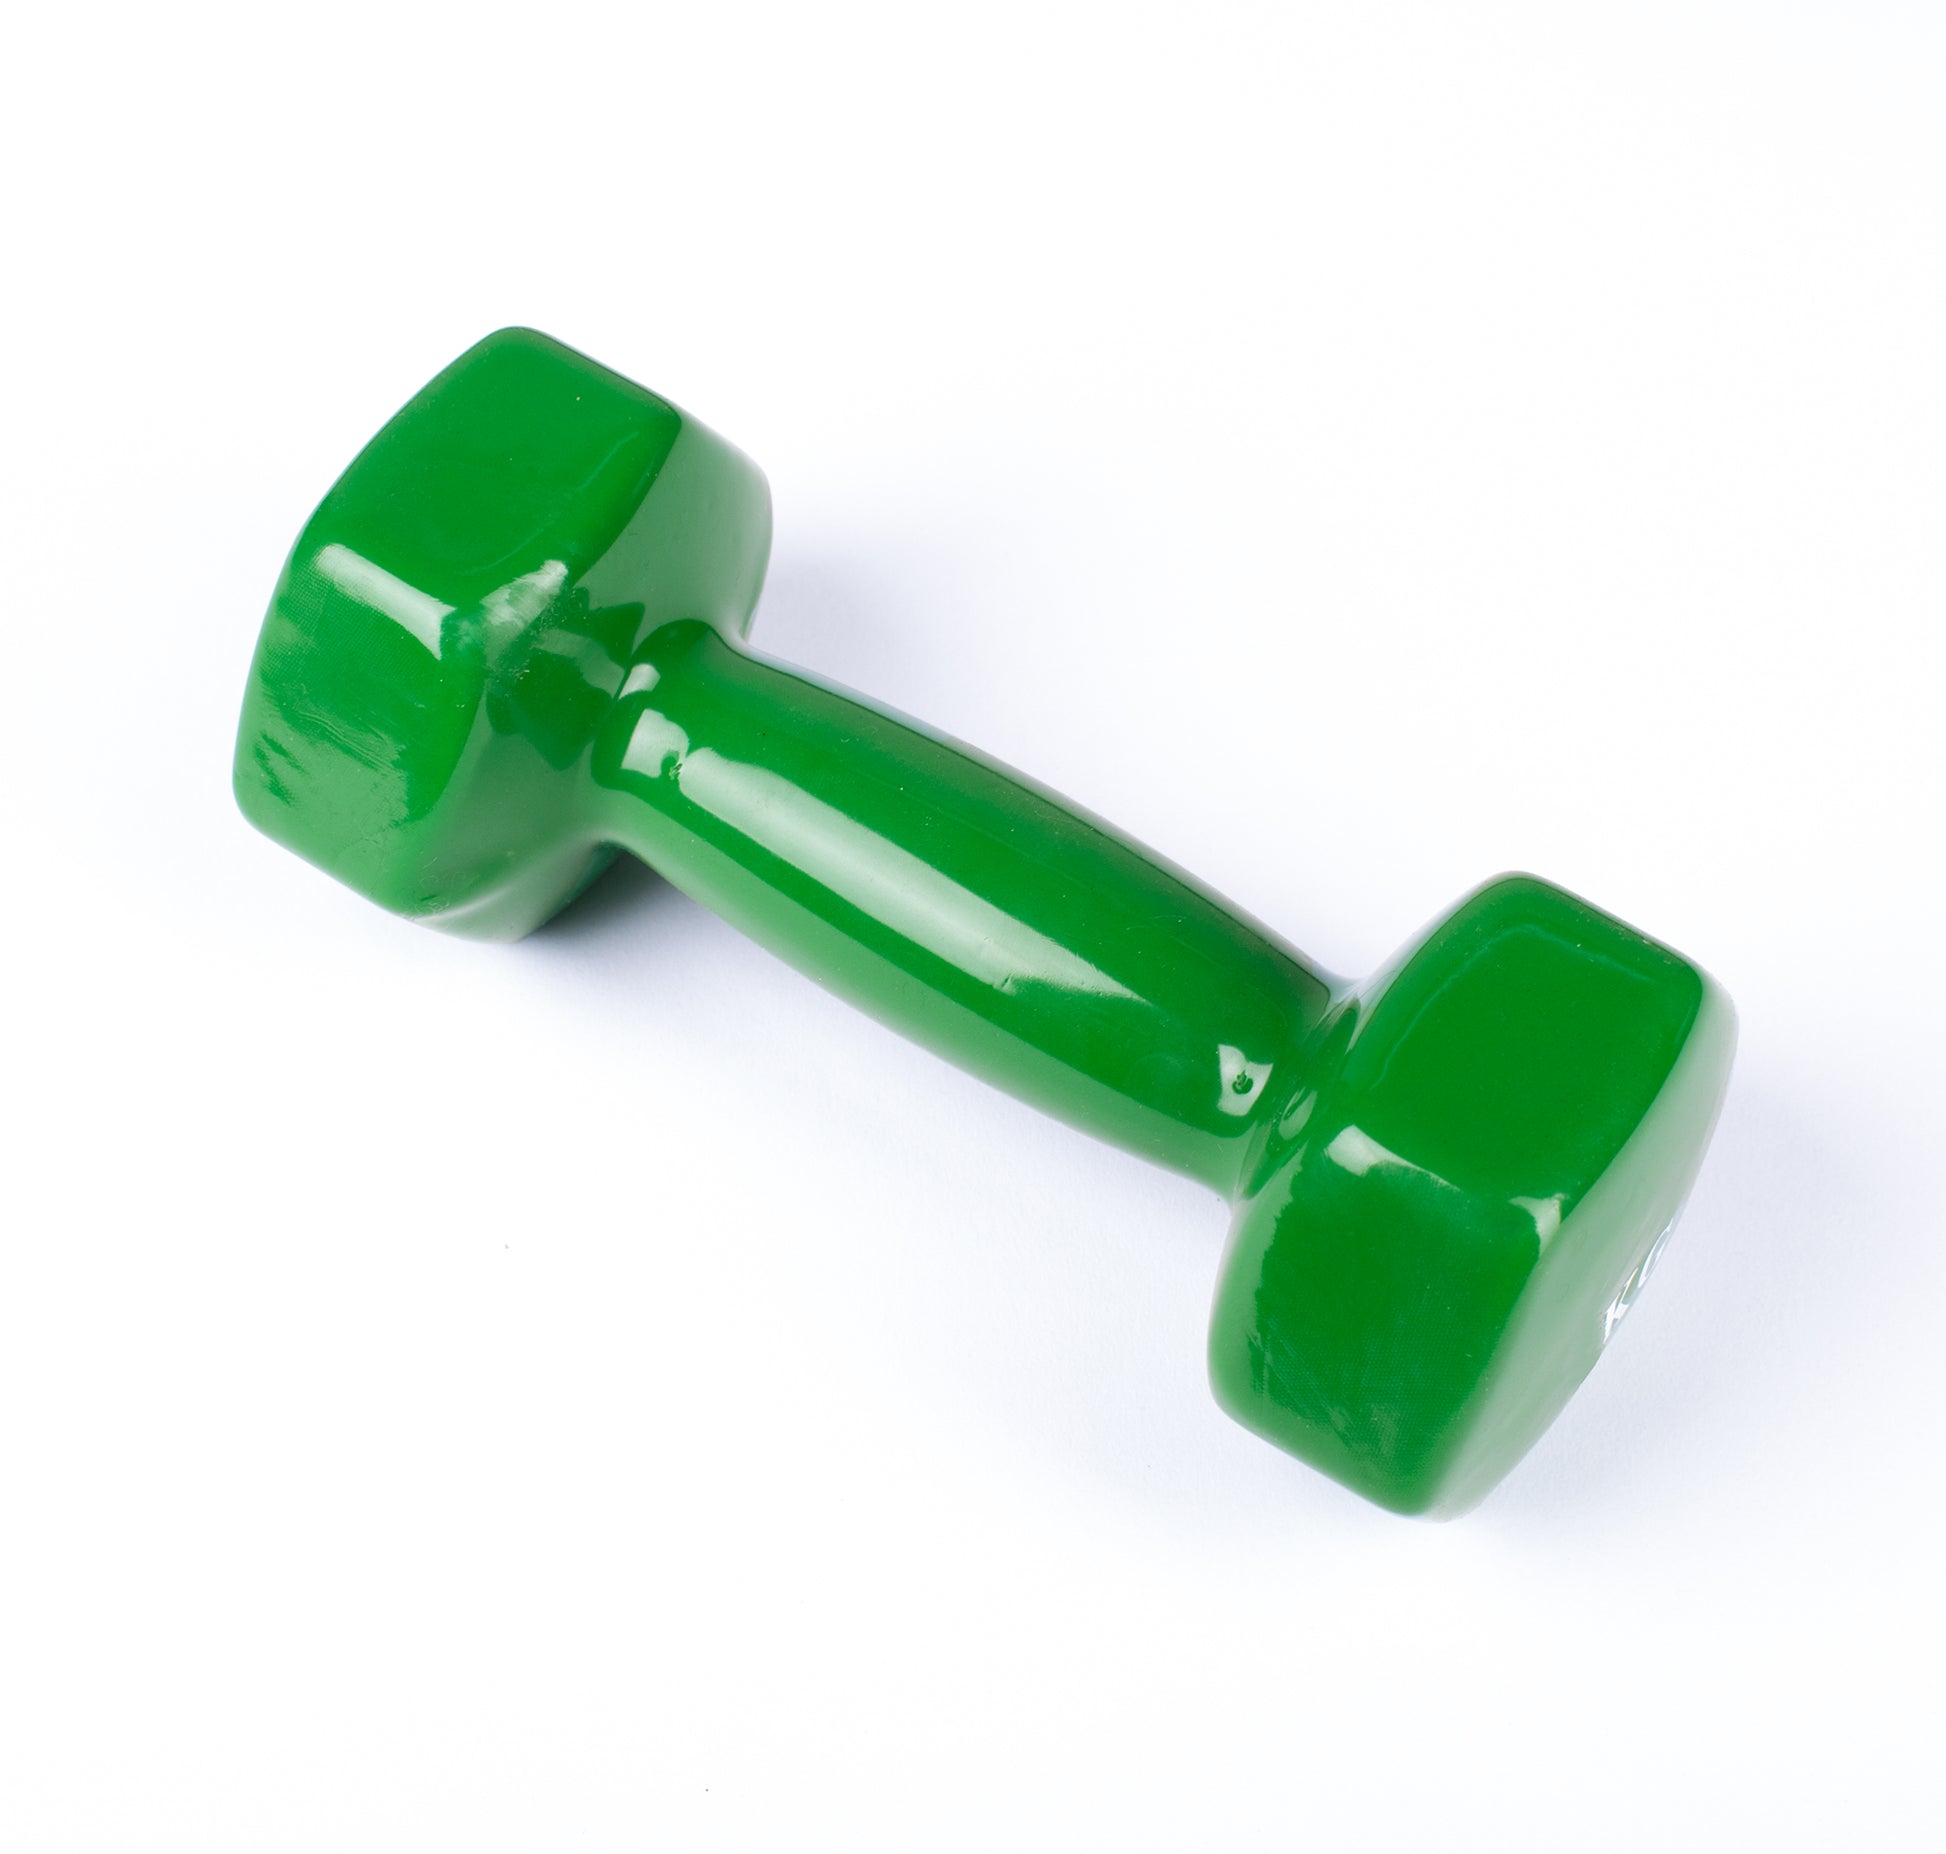 دامبل حديد للتمارين الرياضية بطبقة من الفينيل - لون اخضر - قطعة واحدة - وزن 5 كيلو - Kanteen - كانتين